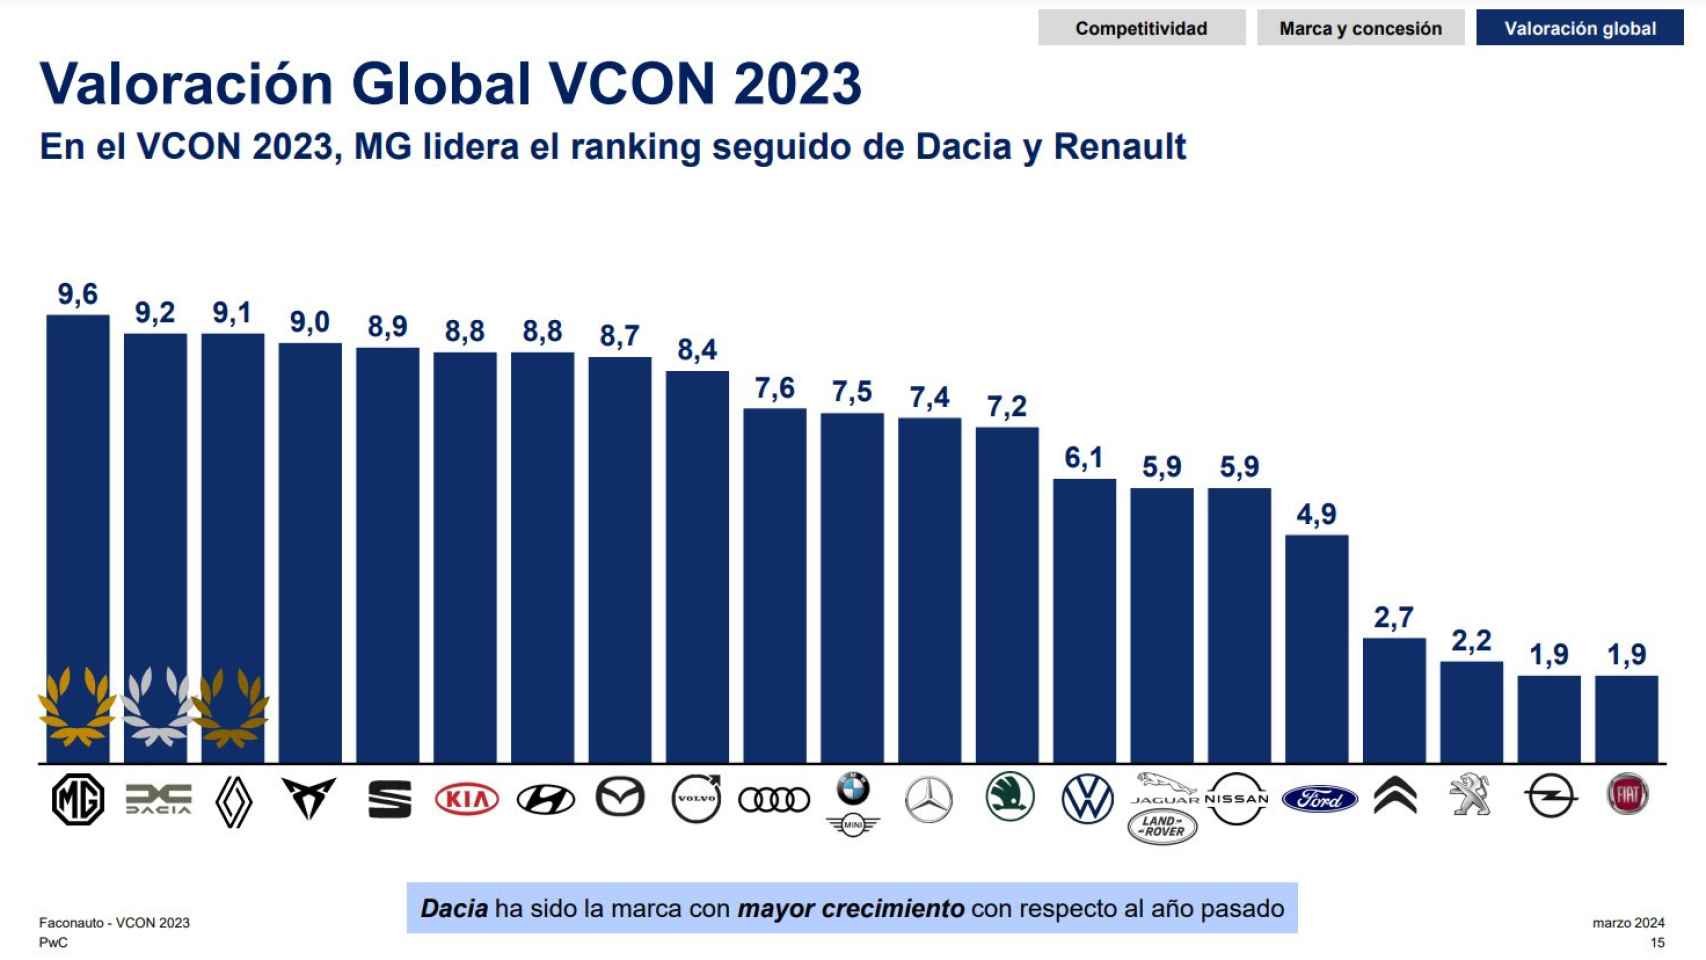 Valoración Global VCON 2023.